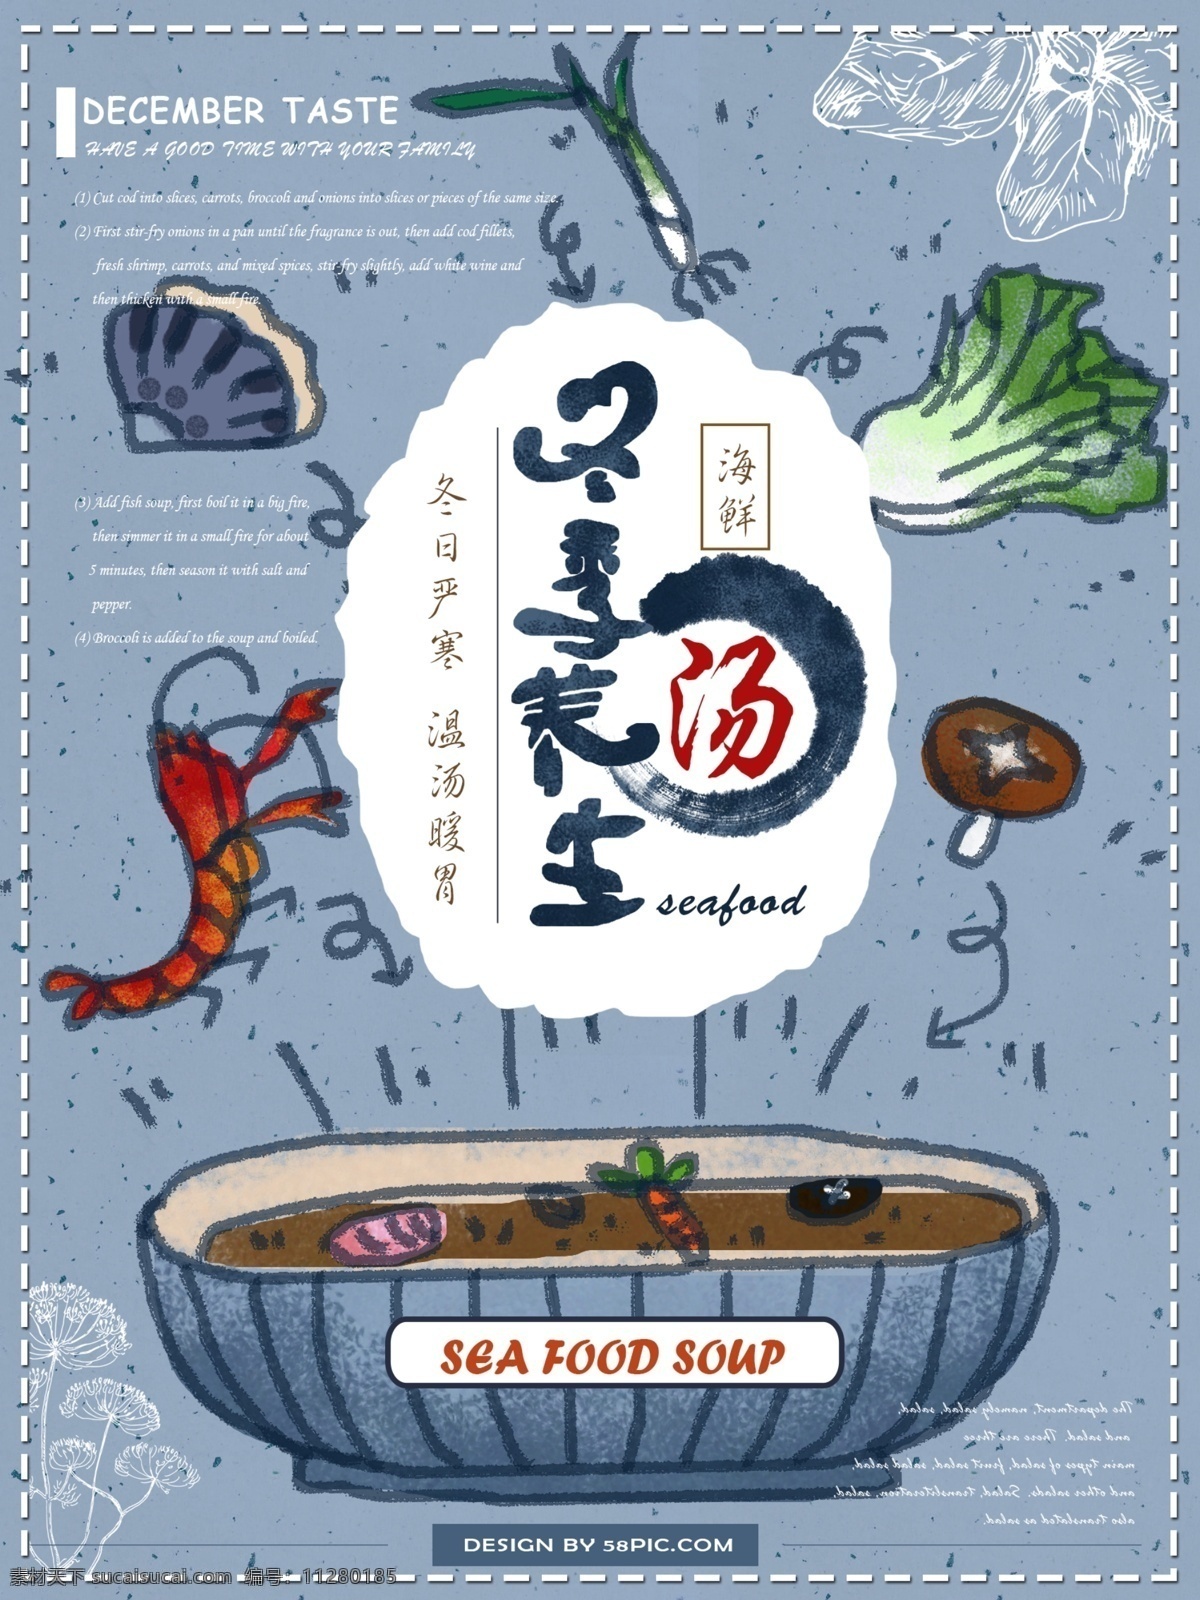 原创 手绘 蓝色 冬季 养生 海鲜 汤 海报 冬季养生 食材 蘑菇 大白菜 海鲜汤 卡通风格